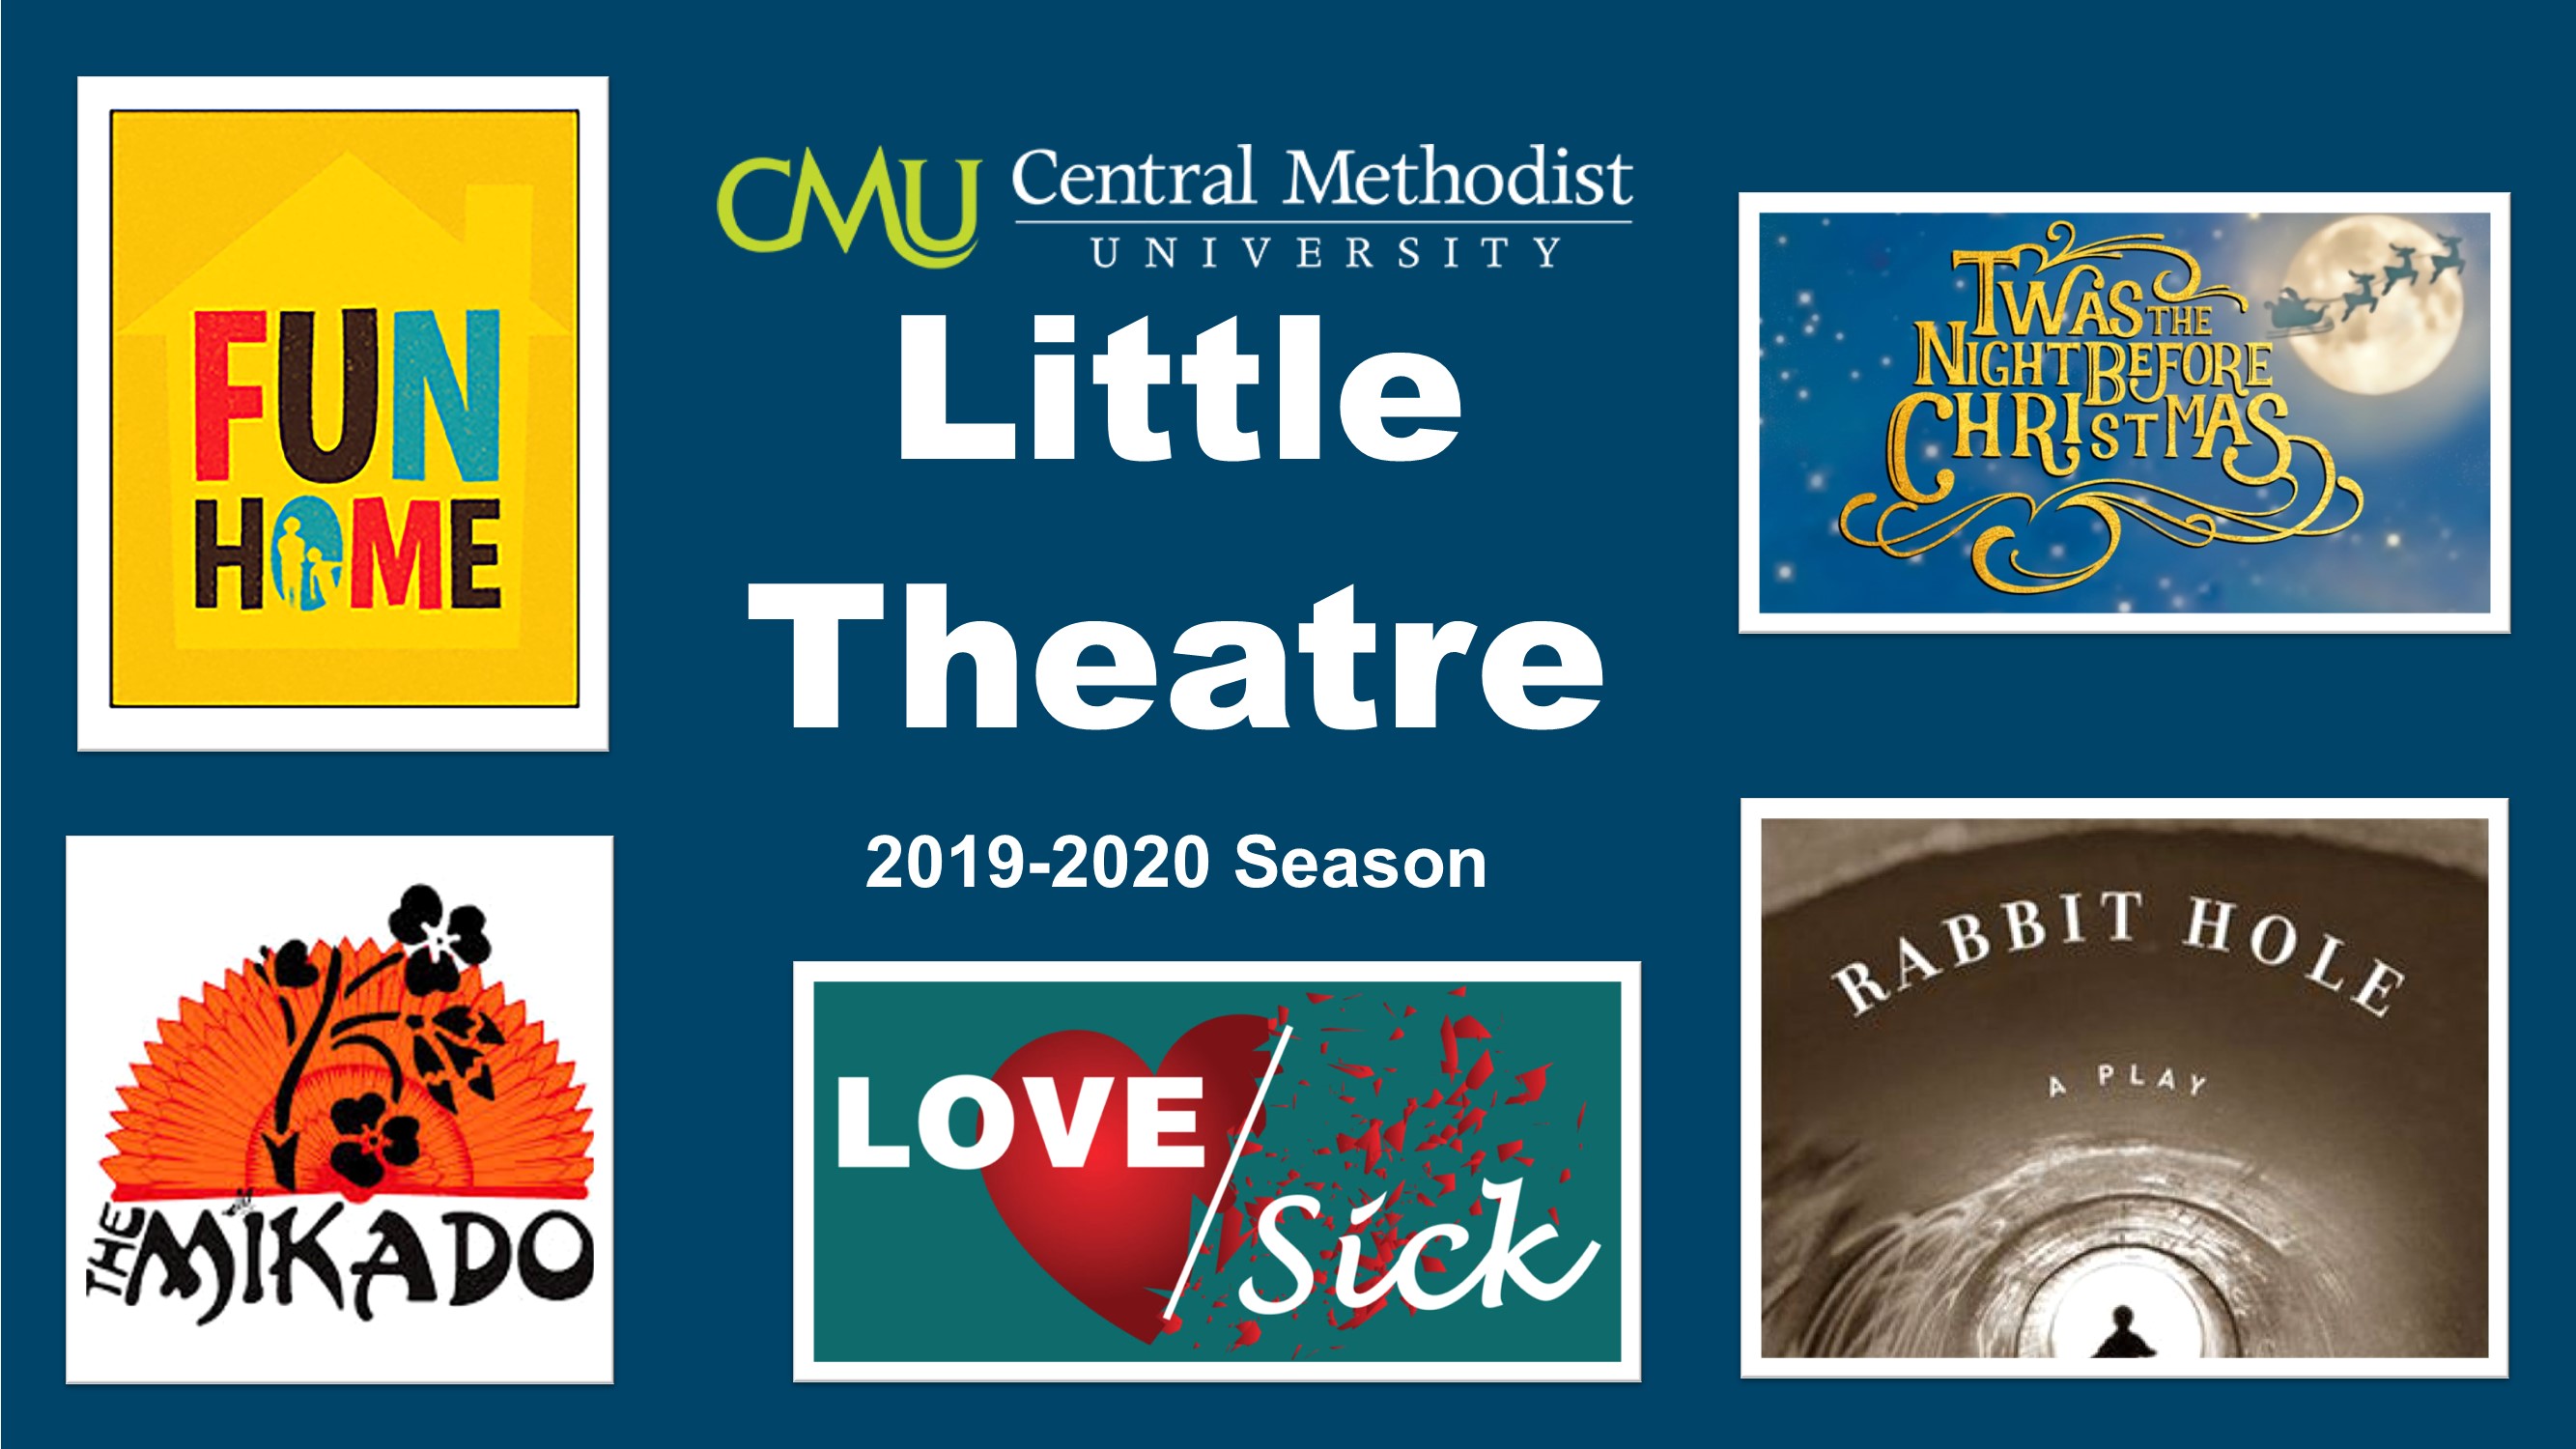 Theatre season 2019-20